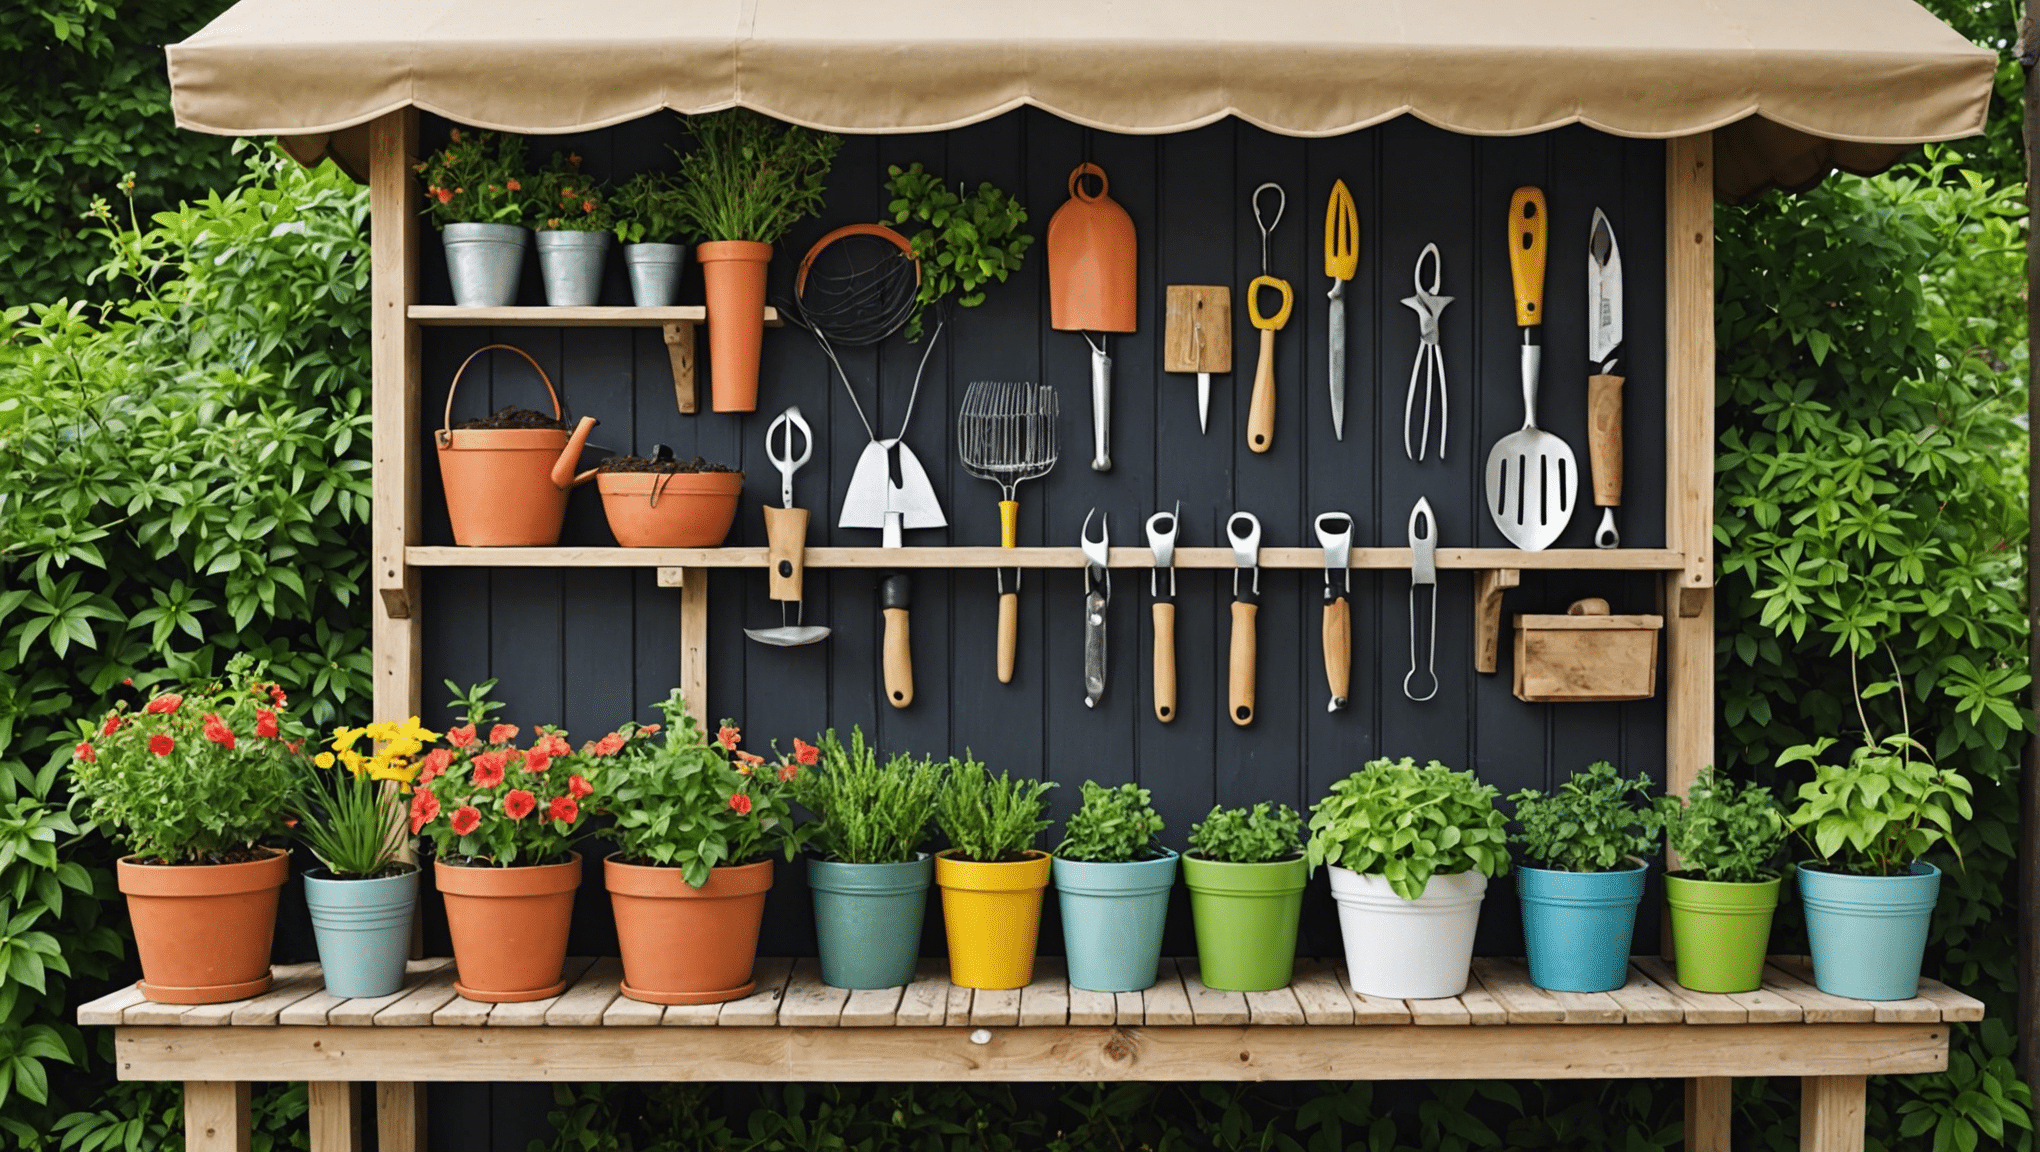 scopri idee creative per riporre gli attrezzi da giardinaggio per mantenere le tue attrezzature da giardino organizzate e accessibili con i nostri suggerimenti e soluzioni utili.